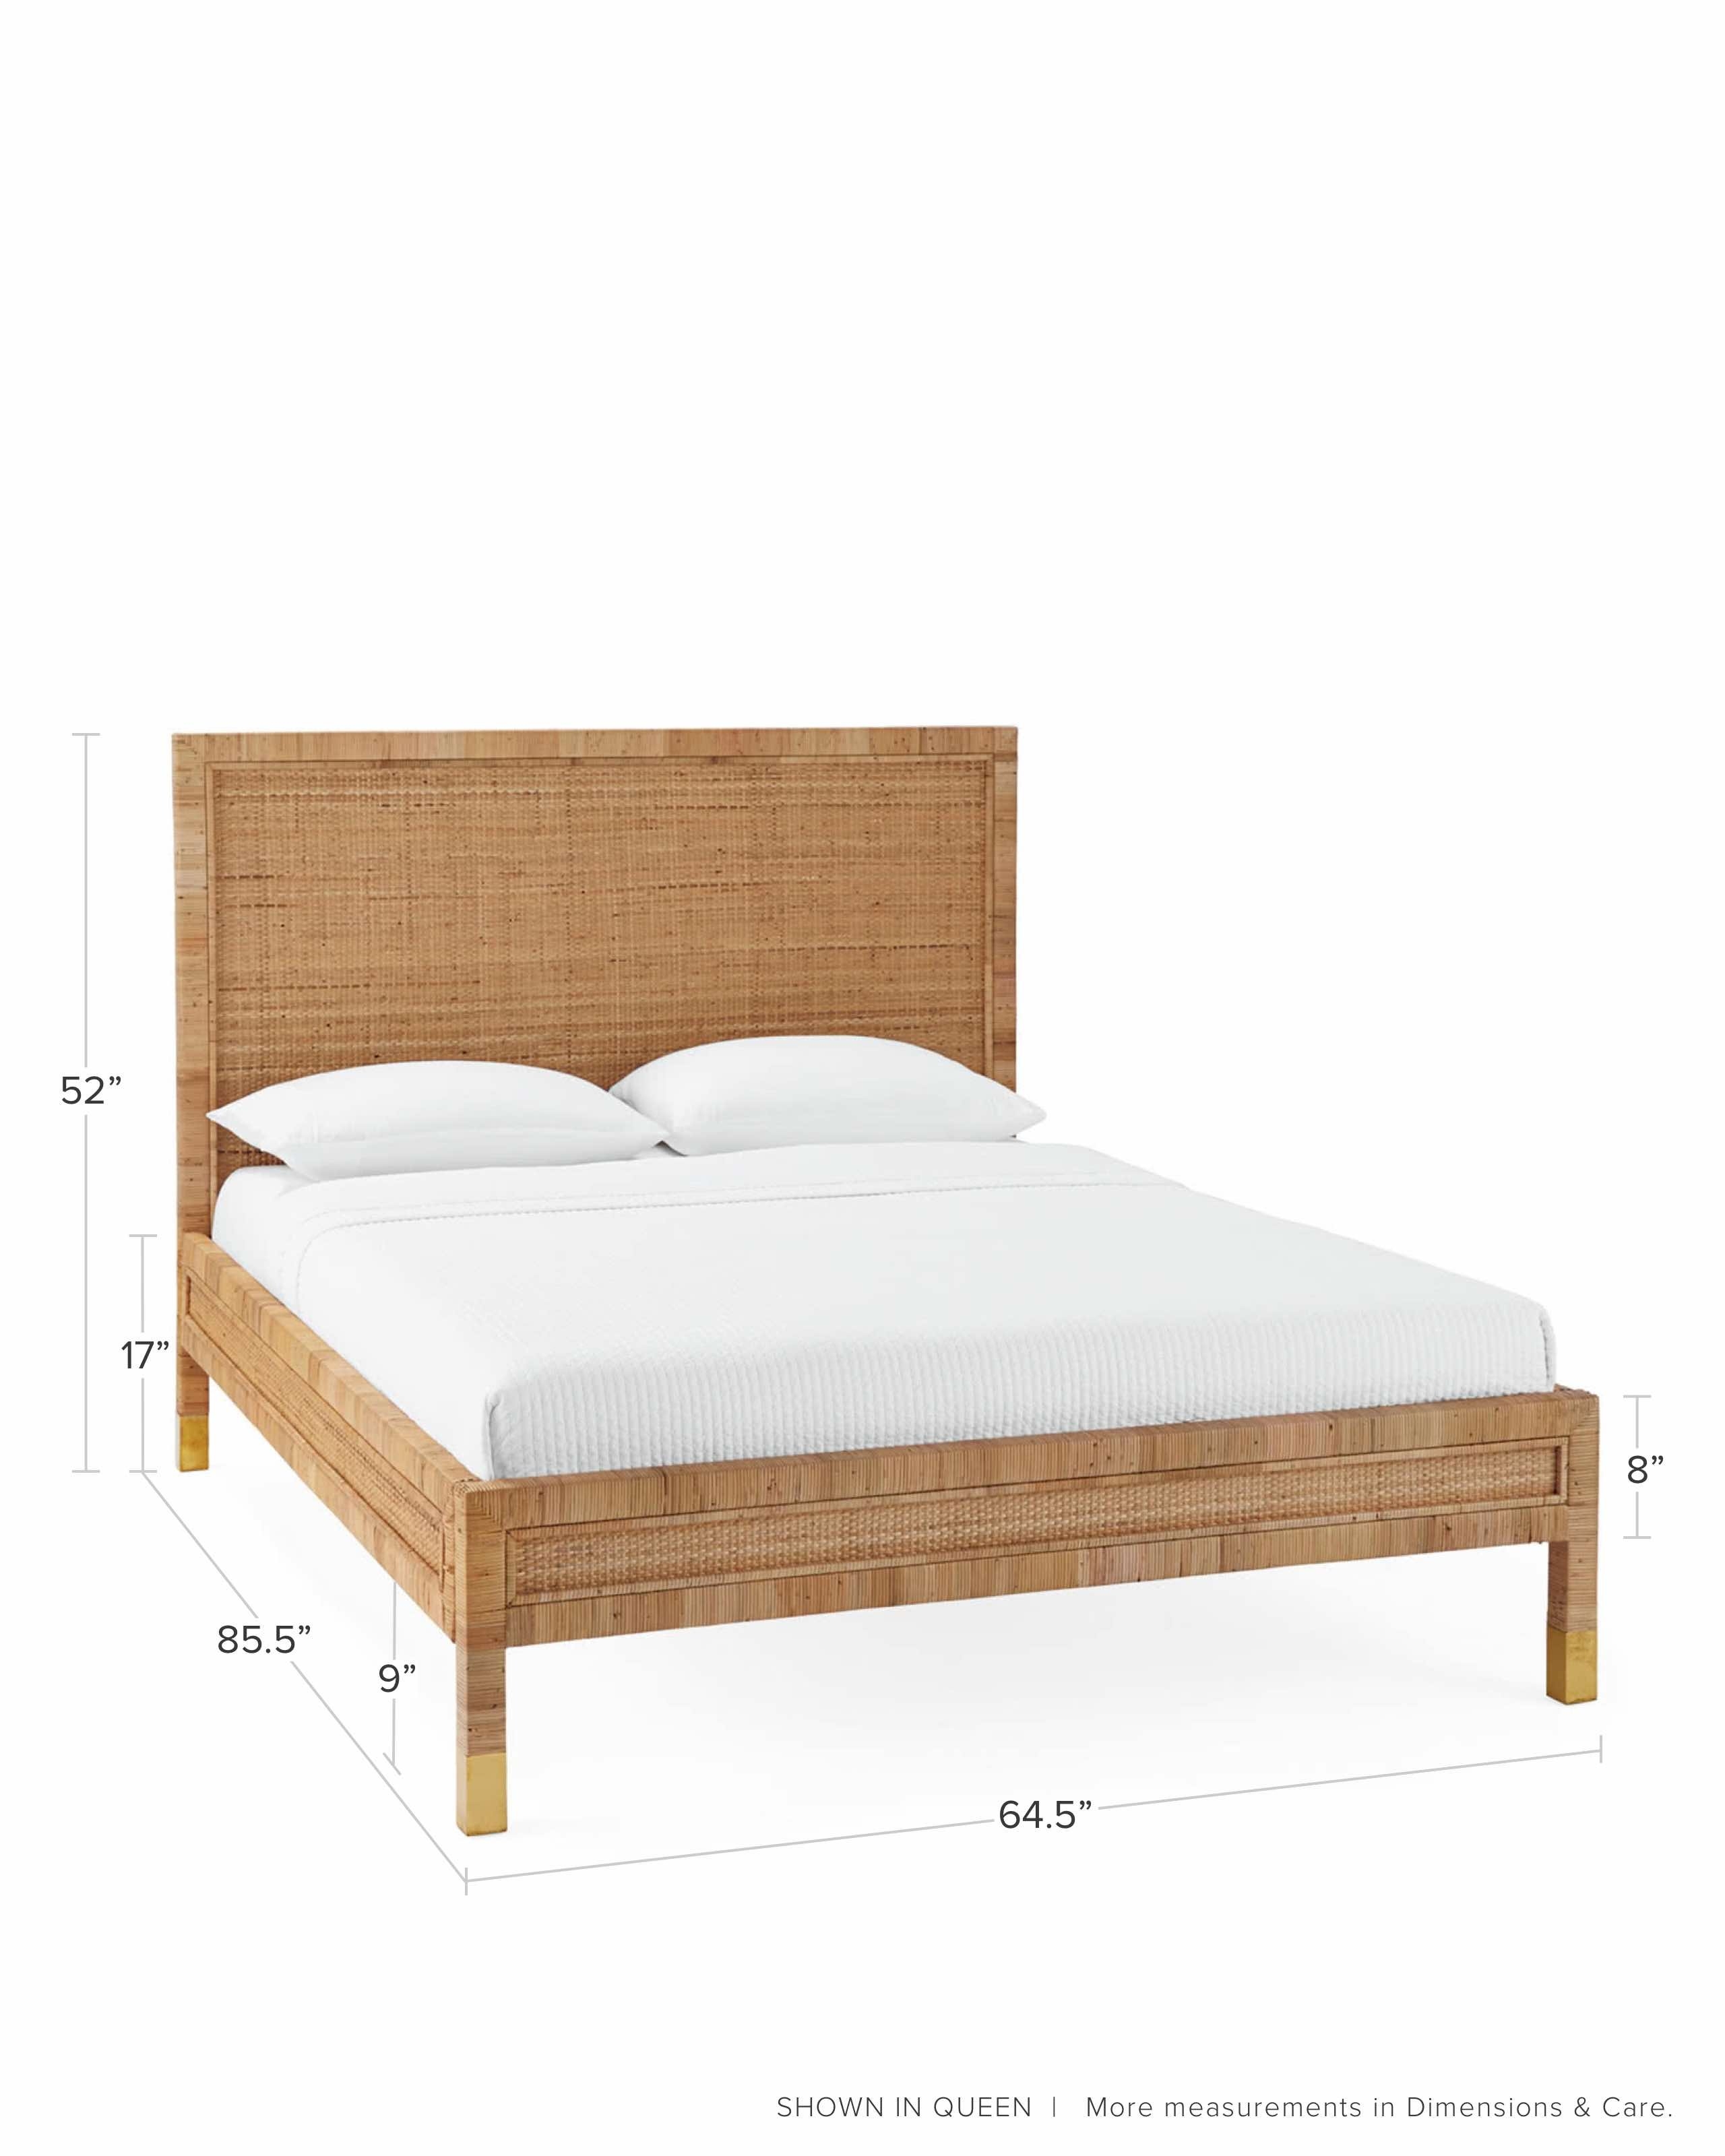 Balboa Rattan Bed - Image 1